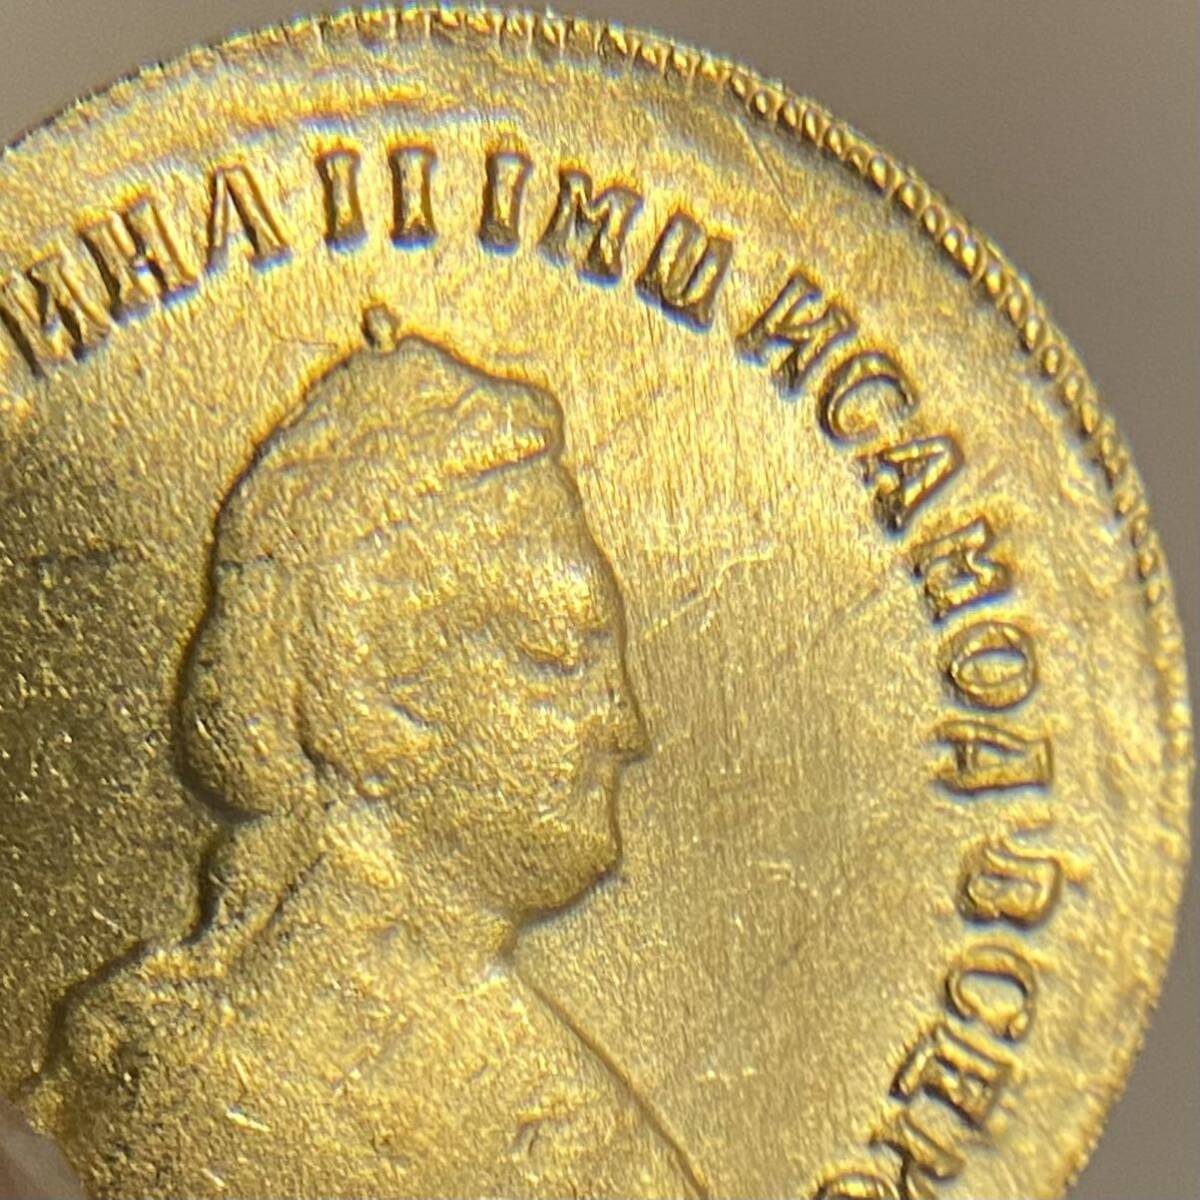 レア ロシア帝国古銭 約5.38g エカチェリーナ2世 1779年銘 小型金貨 一円貨幣 硬貨骨董品コインコレクション エラーコインの画像3